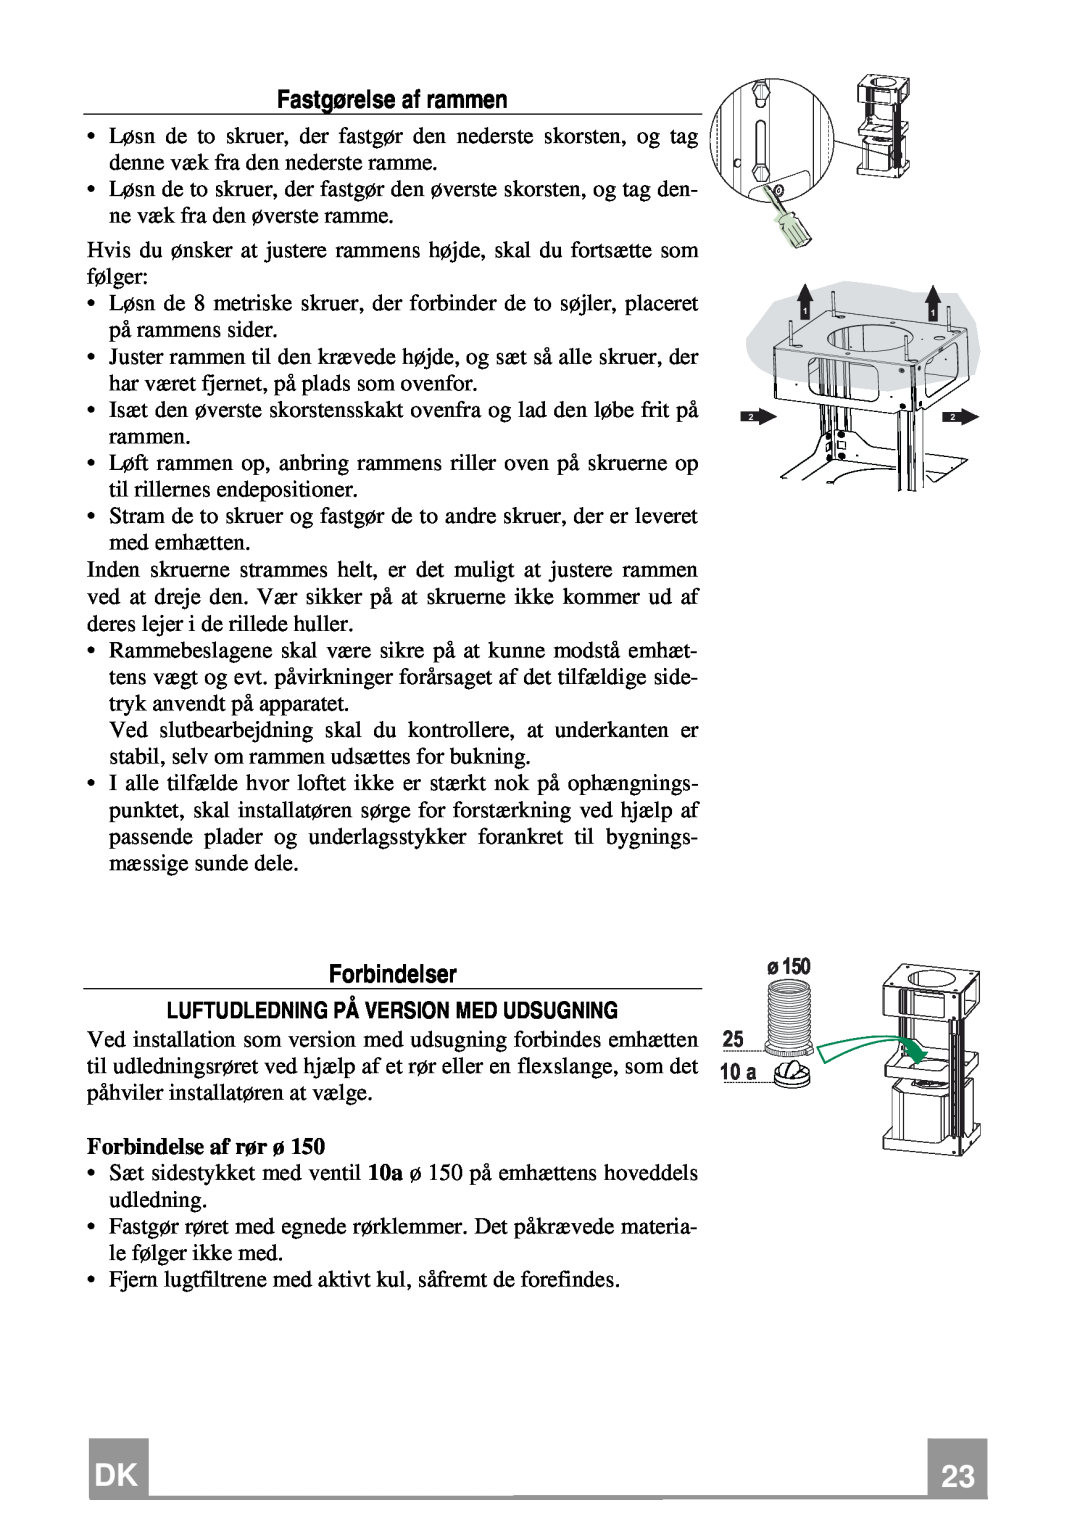 Franke Consumer Products FDF 9044 I XS ECS manual Fastgørelse af rammen, Forbindelse af rør ø, 10 a 